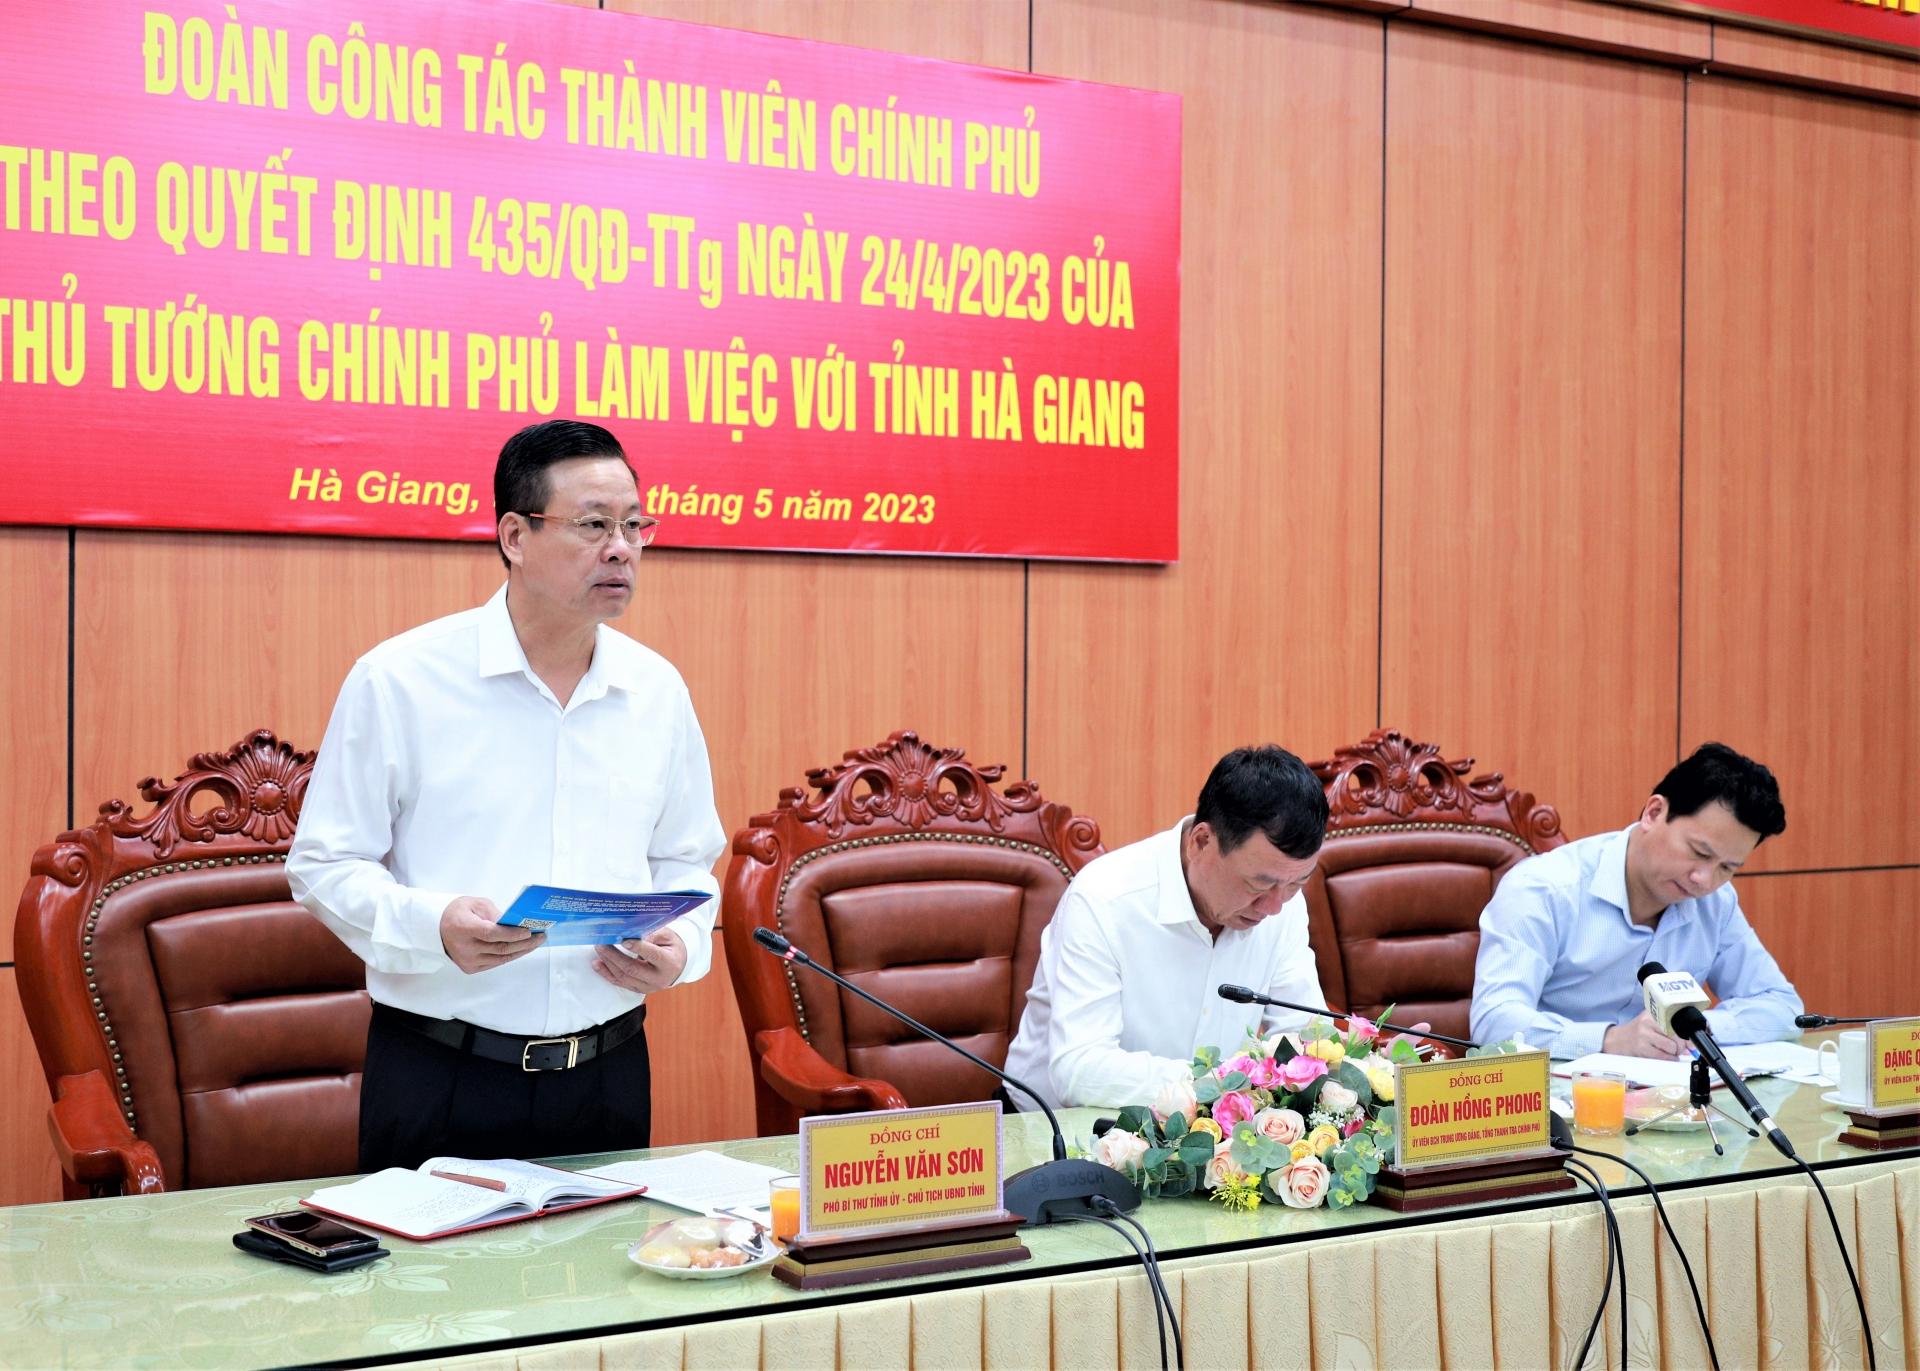 Phó Bí thư Tỉnh ủy, Chủ tịch UBND tỉnh Nguyễn Văn Sơn báo cáo tình hình của tỉnh 4 tháng đầu năm với đoàn công tác.